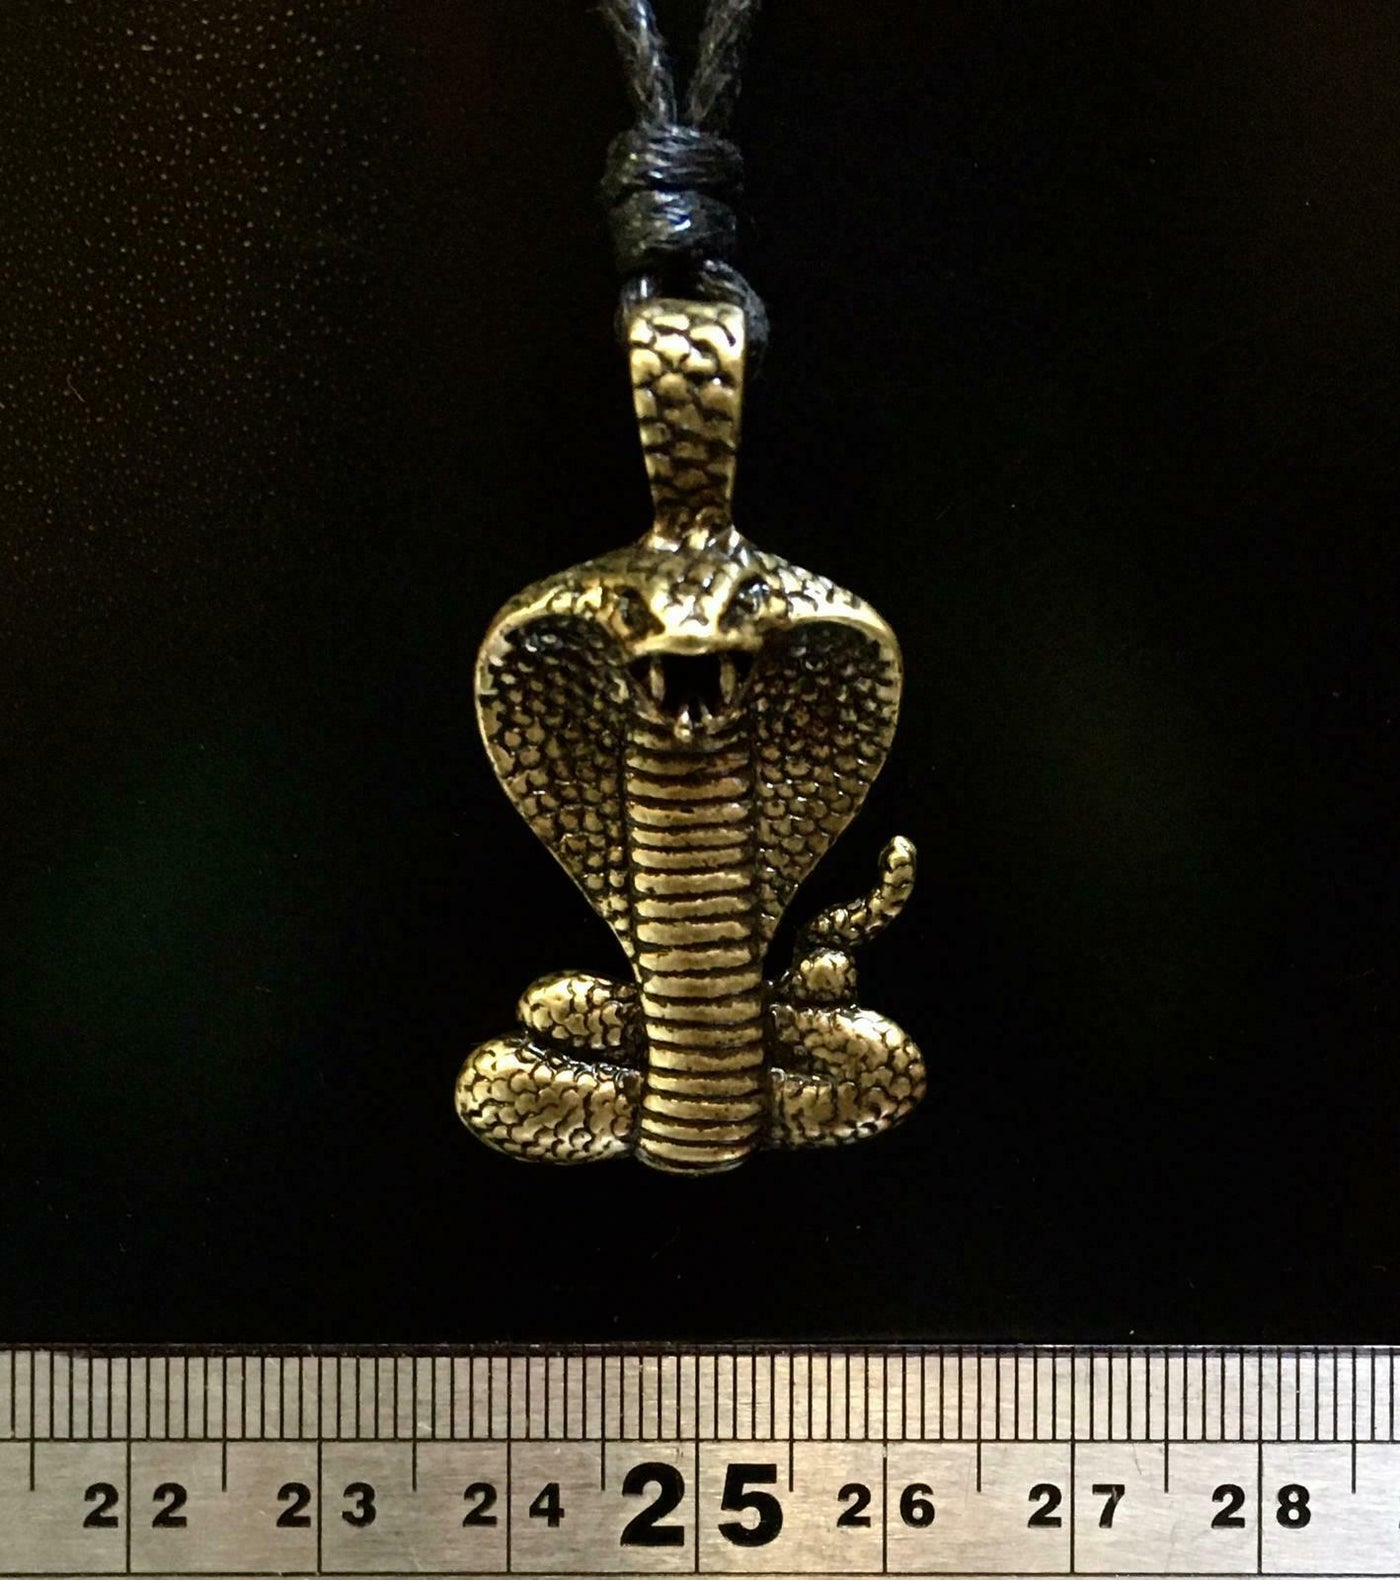 Cobra Snake Pendant - Pewter or Bronze